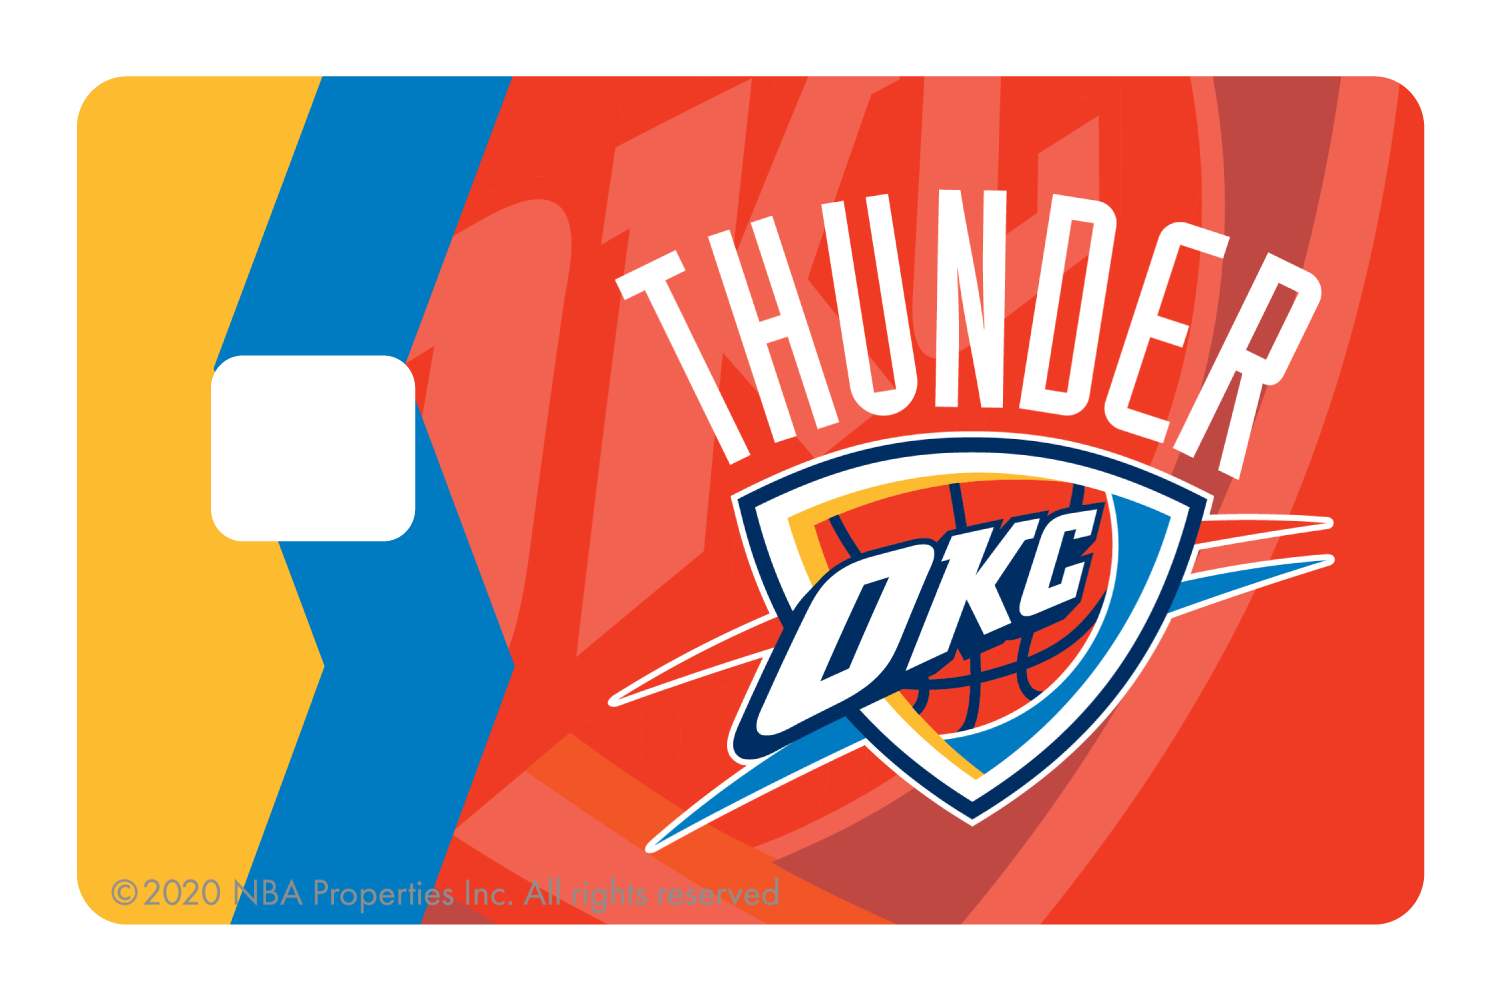 Oklahoma City Thunder: Crossover